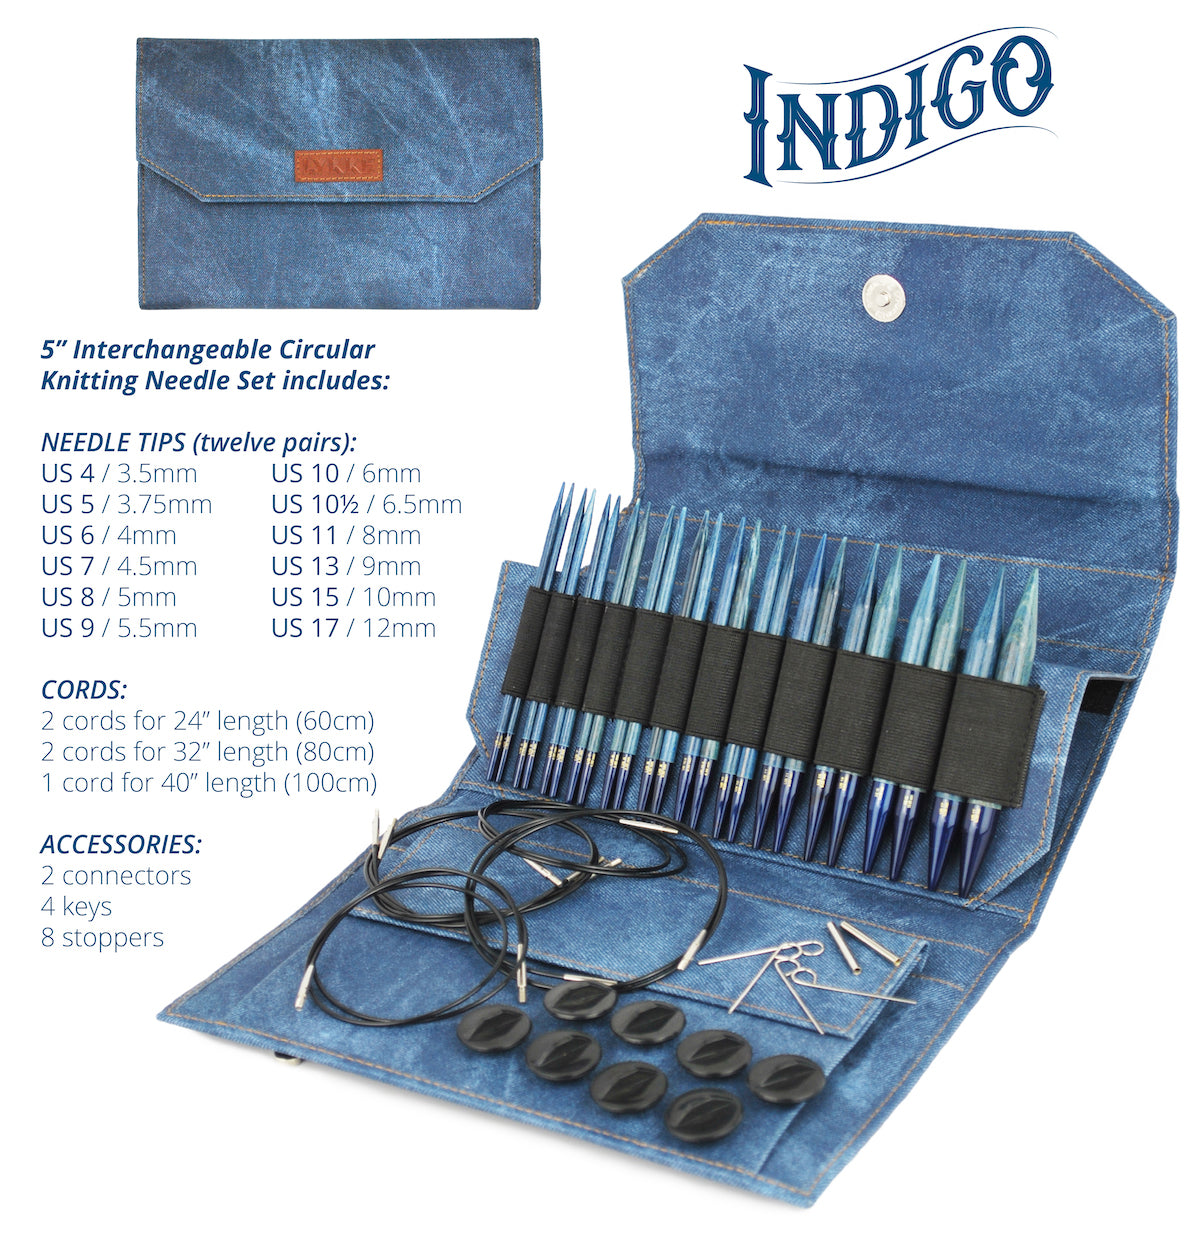 Lykke Indigo 6 Inch Double Pointed Knitting Needles - US 13 (9mm)